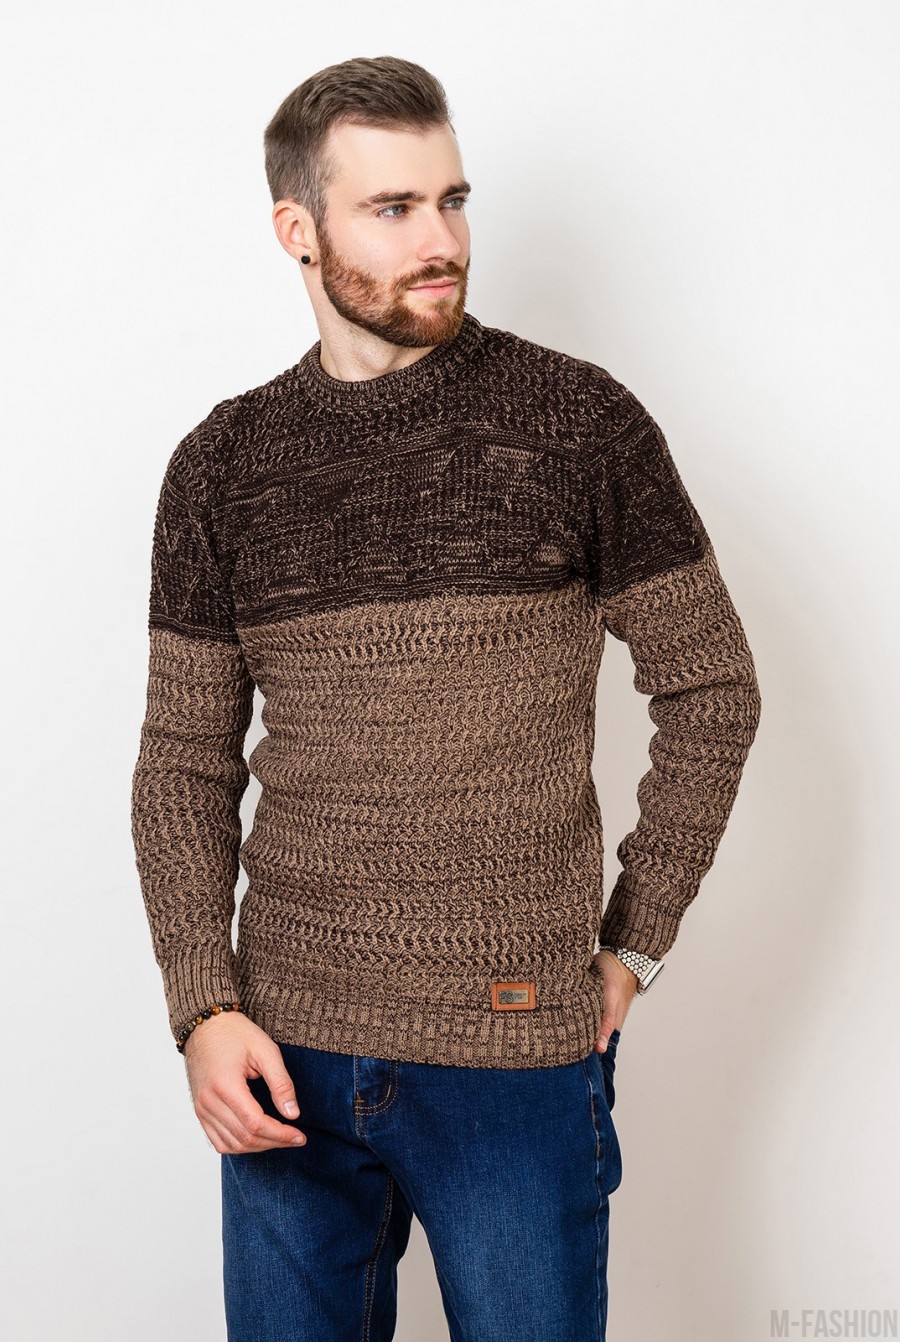 Коричневый шерстяной свитер комбинированной вязки - Фото 1